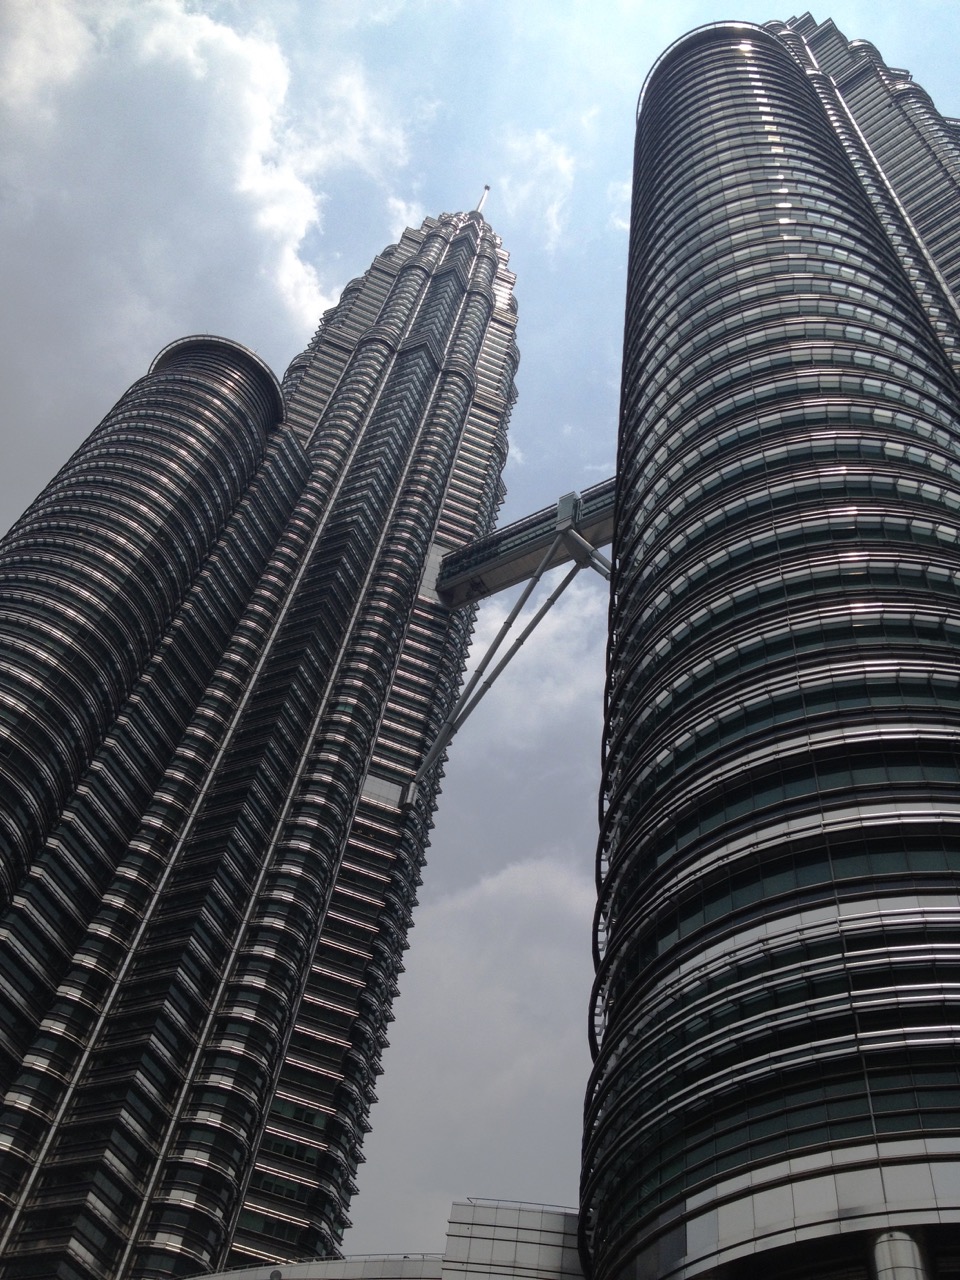 Kuala Lumpur Photos: Petronas Towers